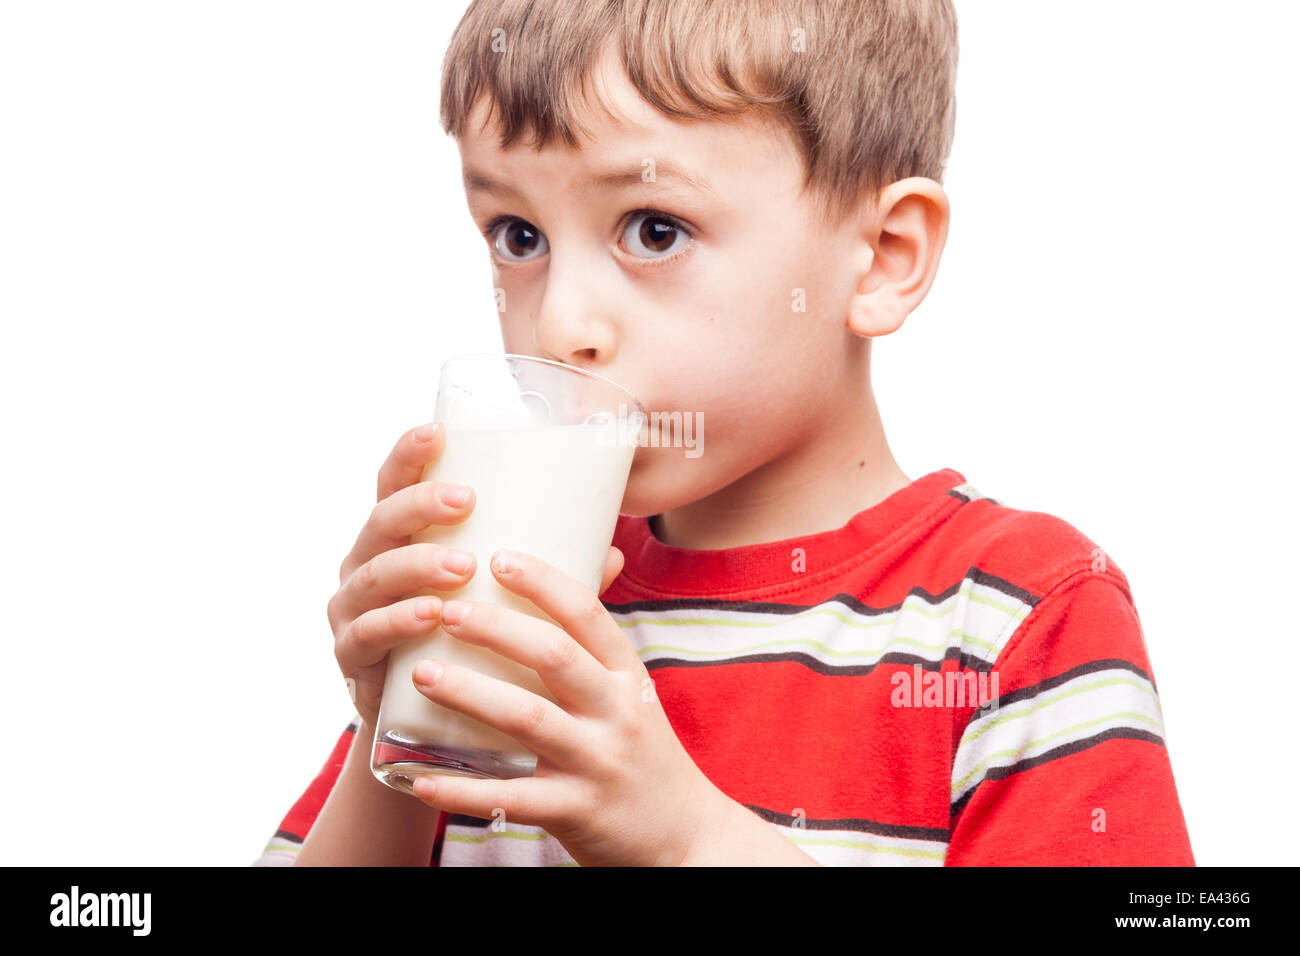 Drinking milk Stock Photo